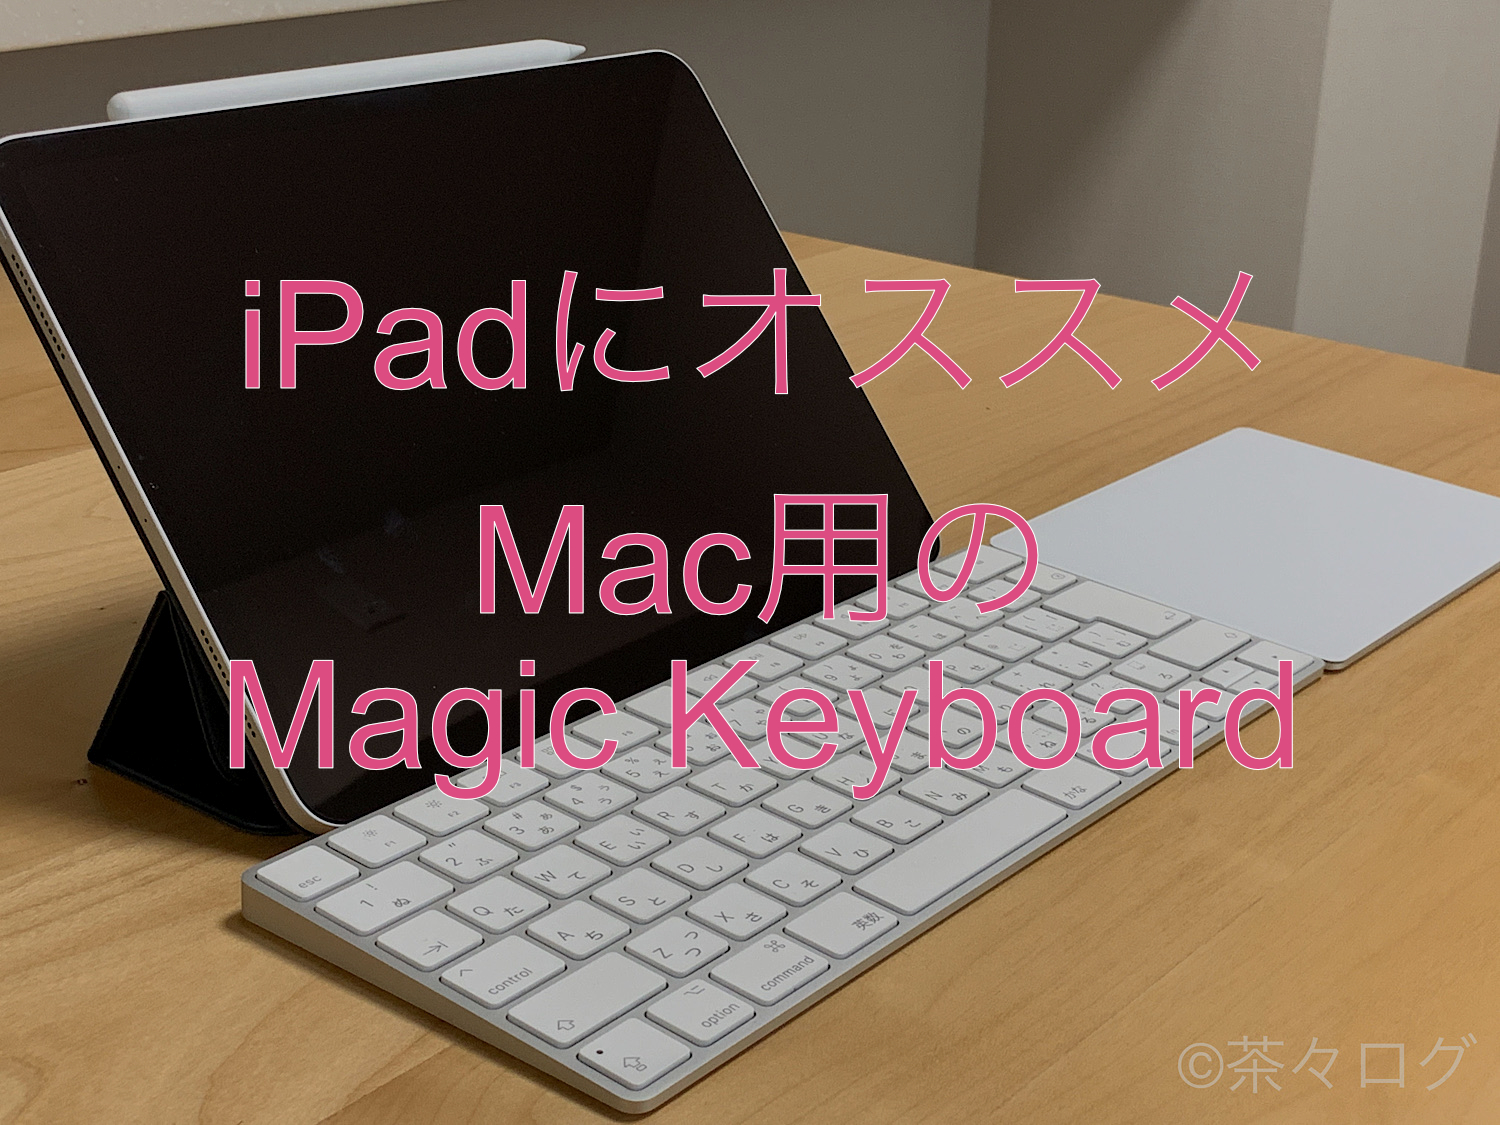 結論が出た！】iPadに最適なキーボードはMac用のMagic Keyboard 茶々ログ